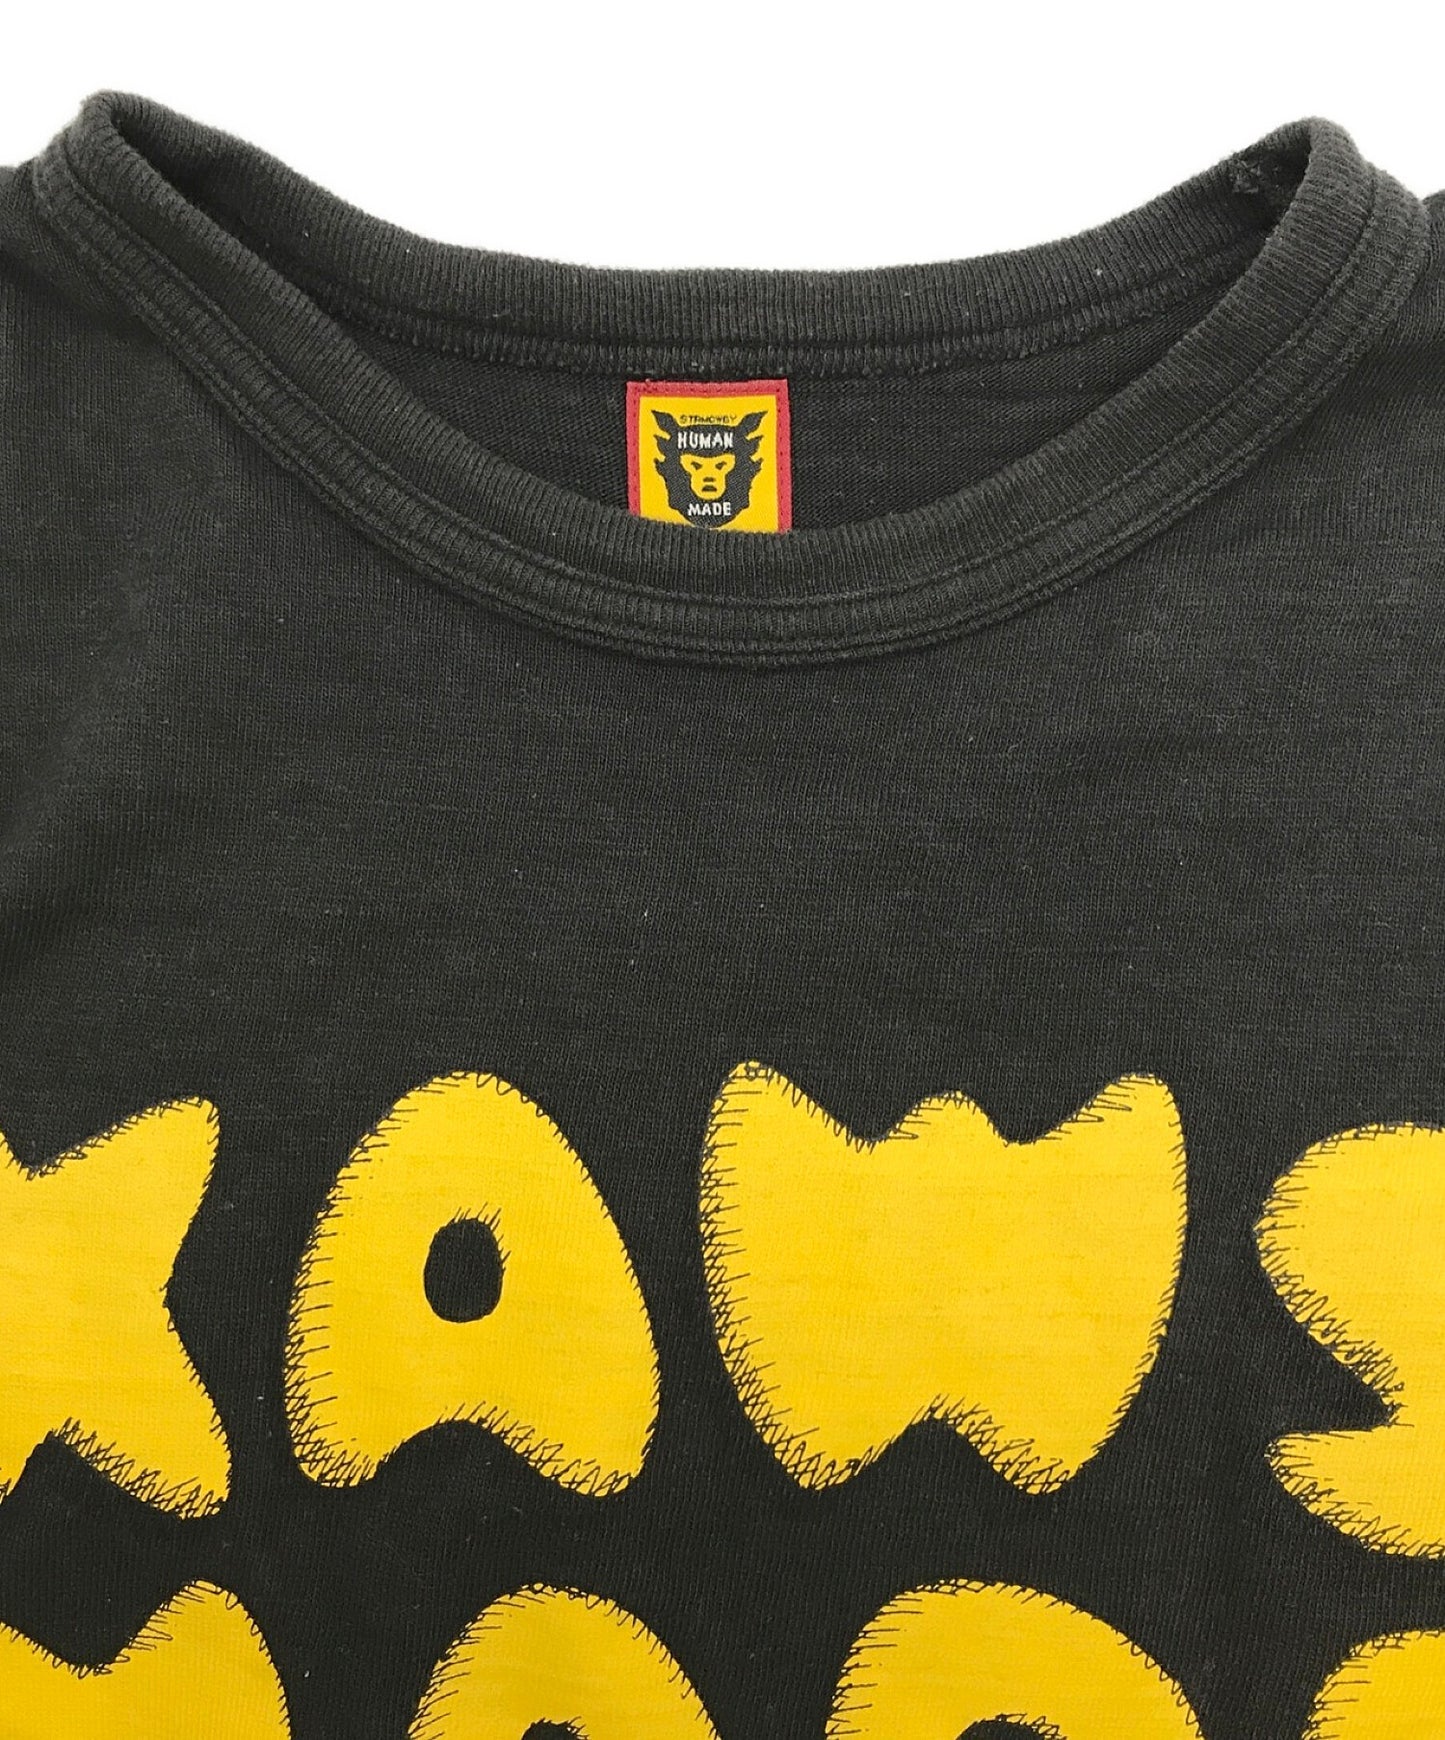 人制造×kaws T恤kaws＃3